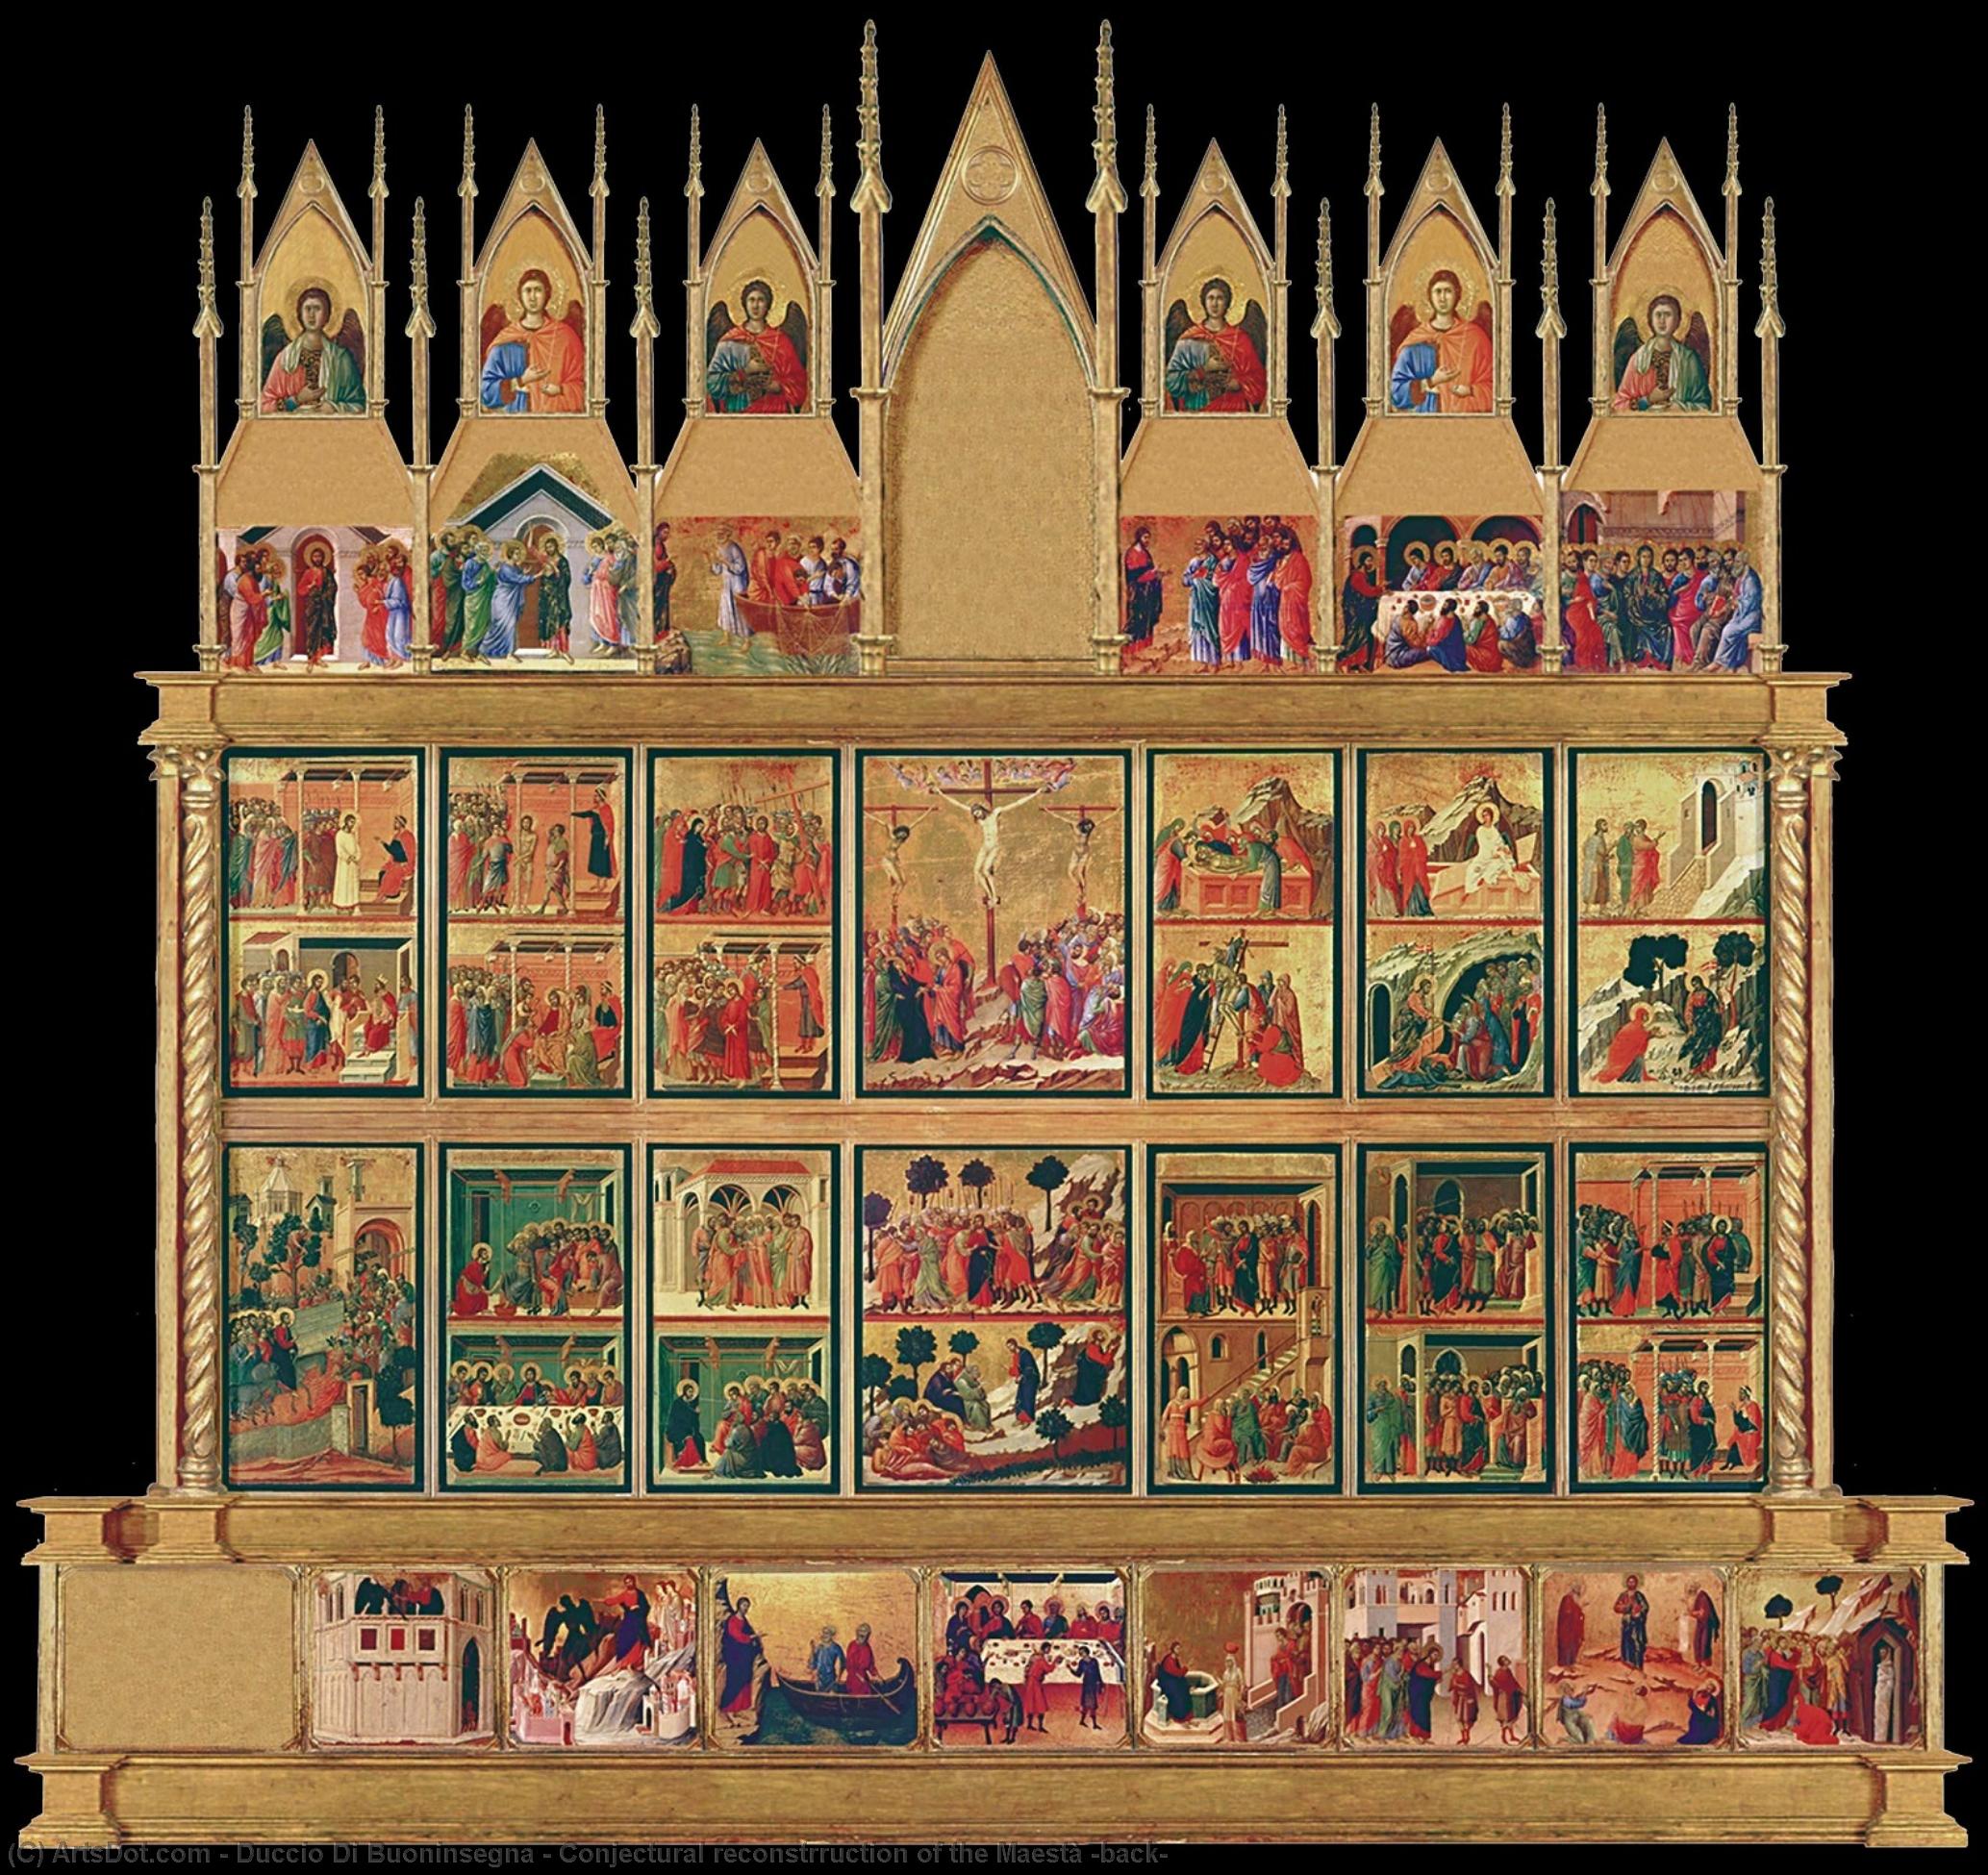 WikiOO.org - Güzel Sanatlar Ansiklopedisi - Resim, Resimler Duccio Di Buoninsegna - Conjectural reconstrruction of the Maestà (back)